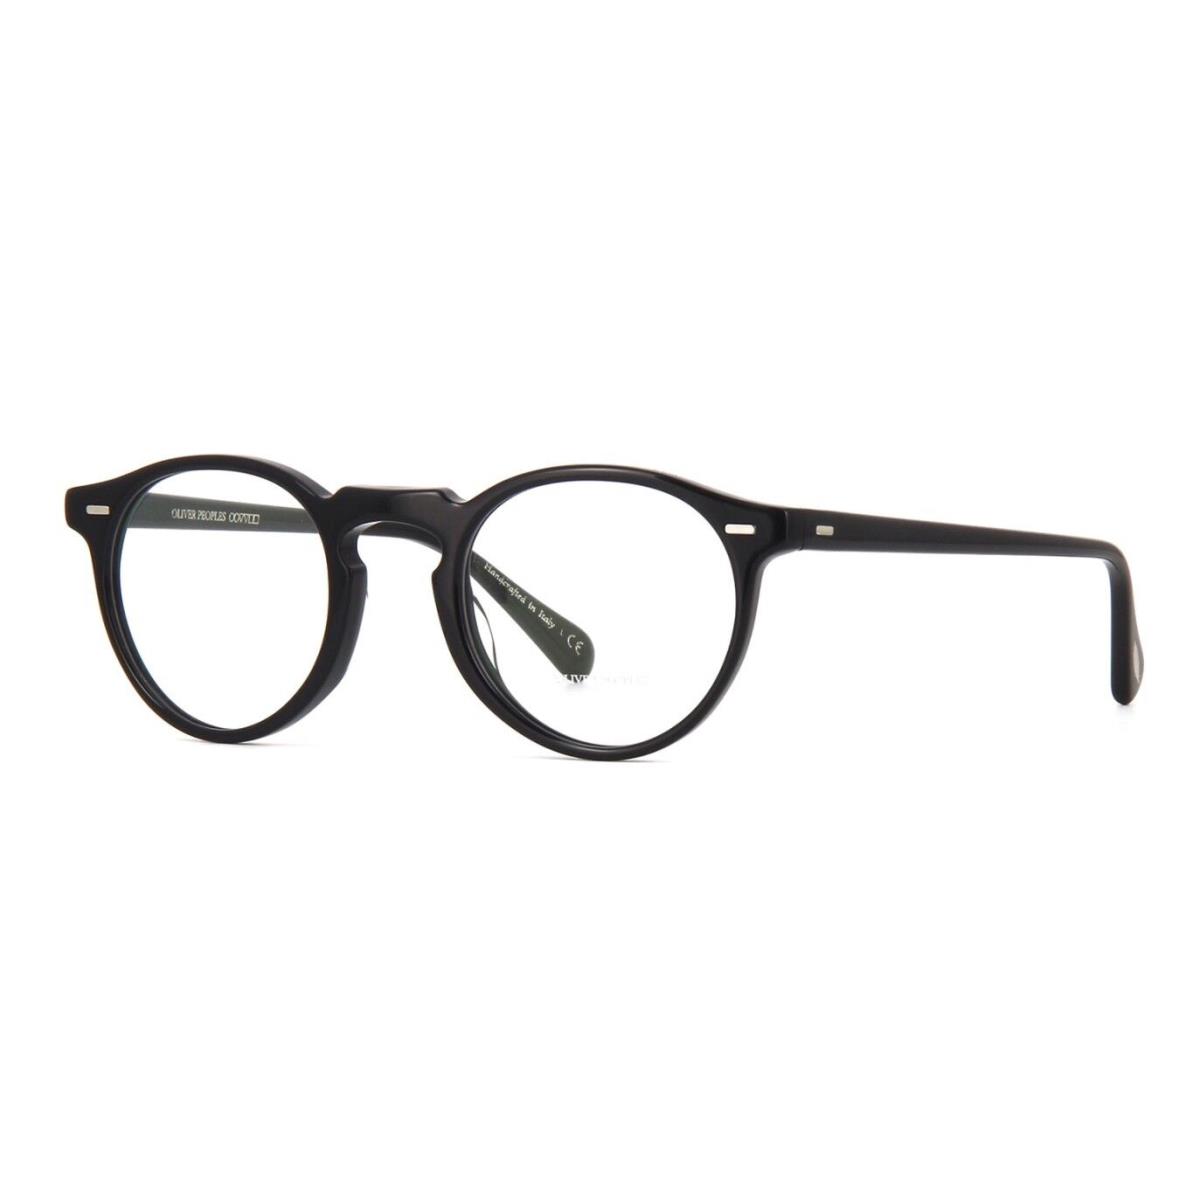 Oliver Peoples Gregory Peck OV 5186 Black 1005 Eyeglasses - Frame: black